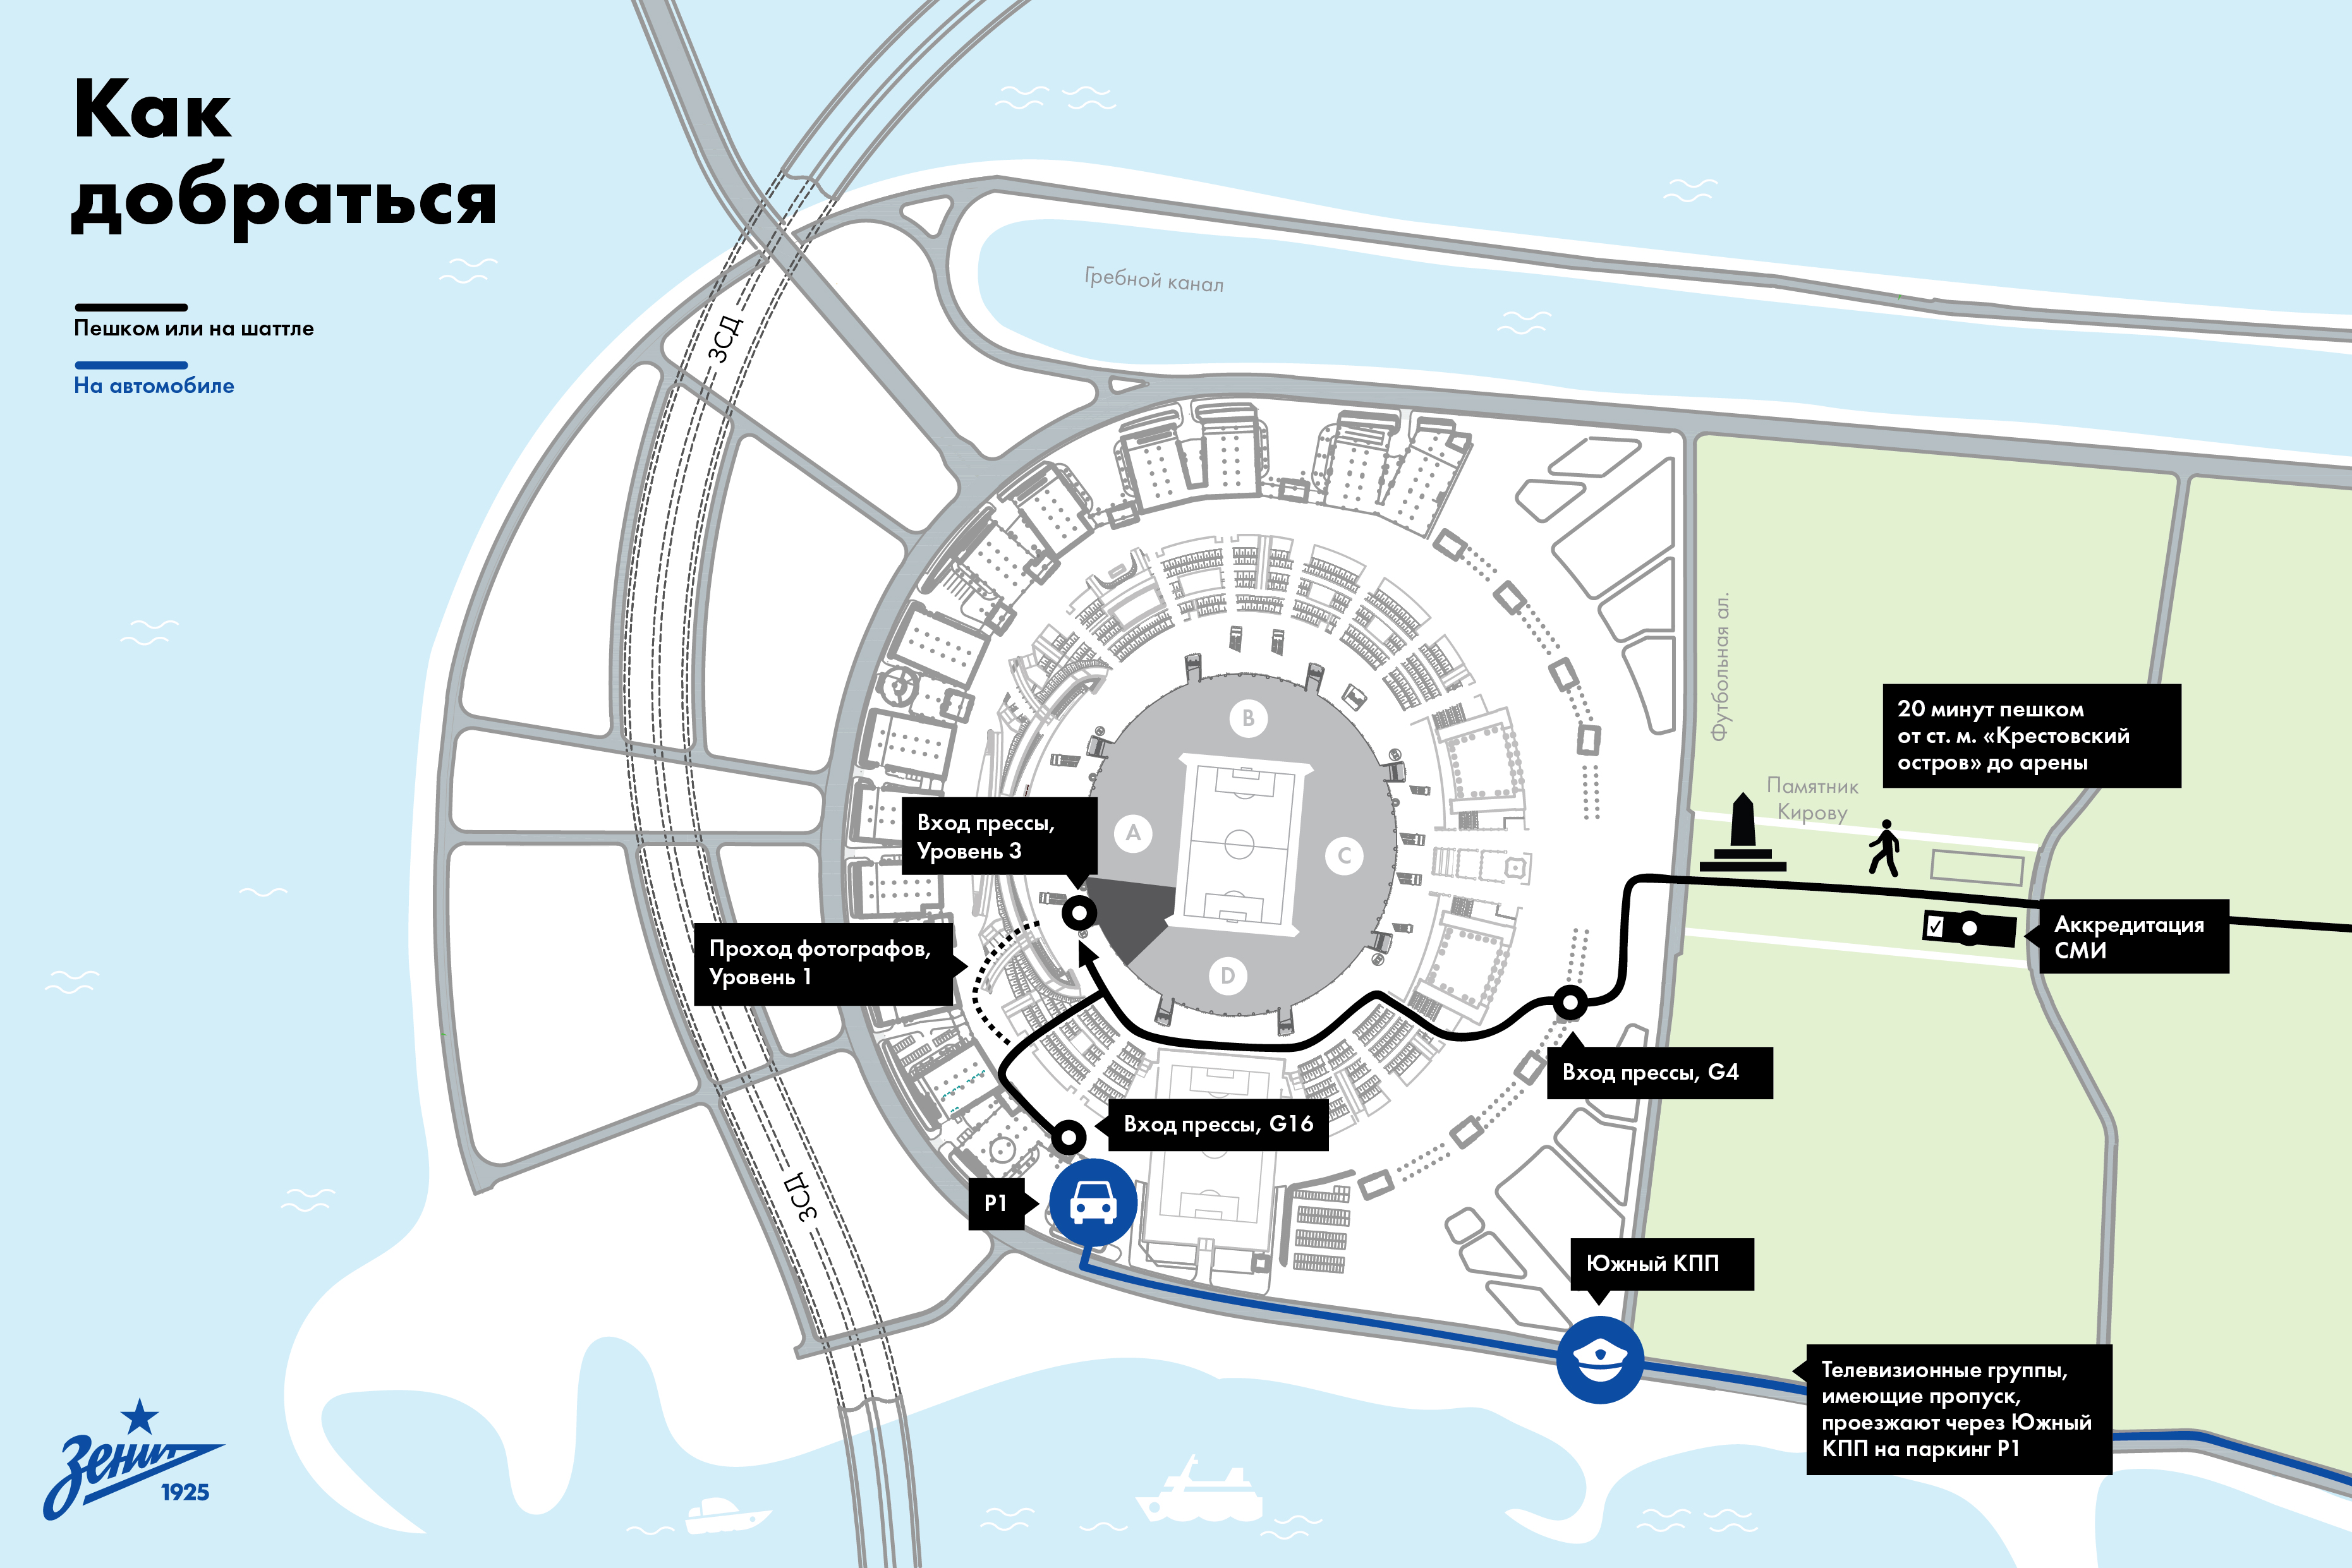 Стадион санкт петербург карта стадиона. Карта Зенит Крестовский остров. Карта стадиона Зенит.